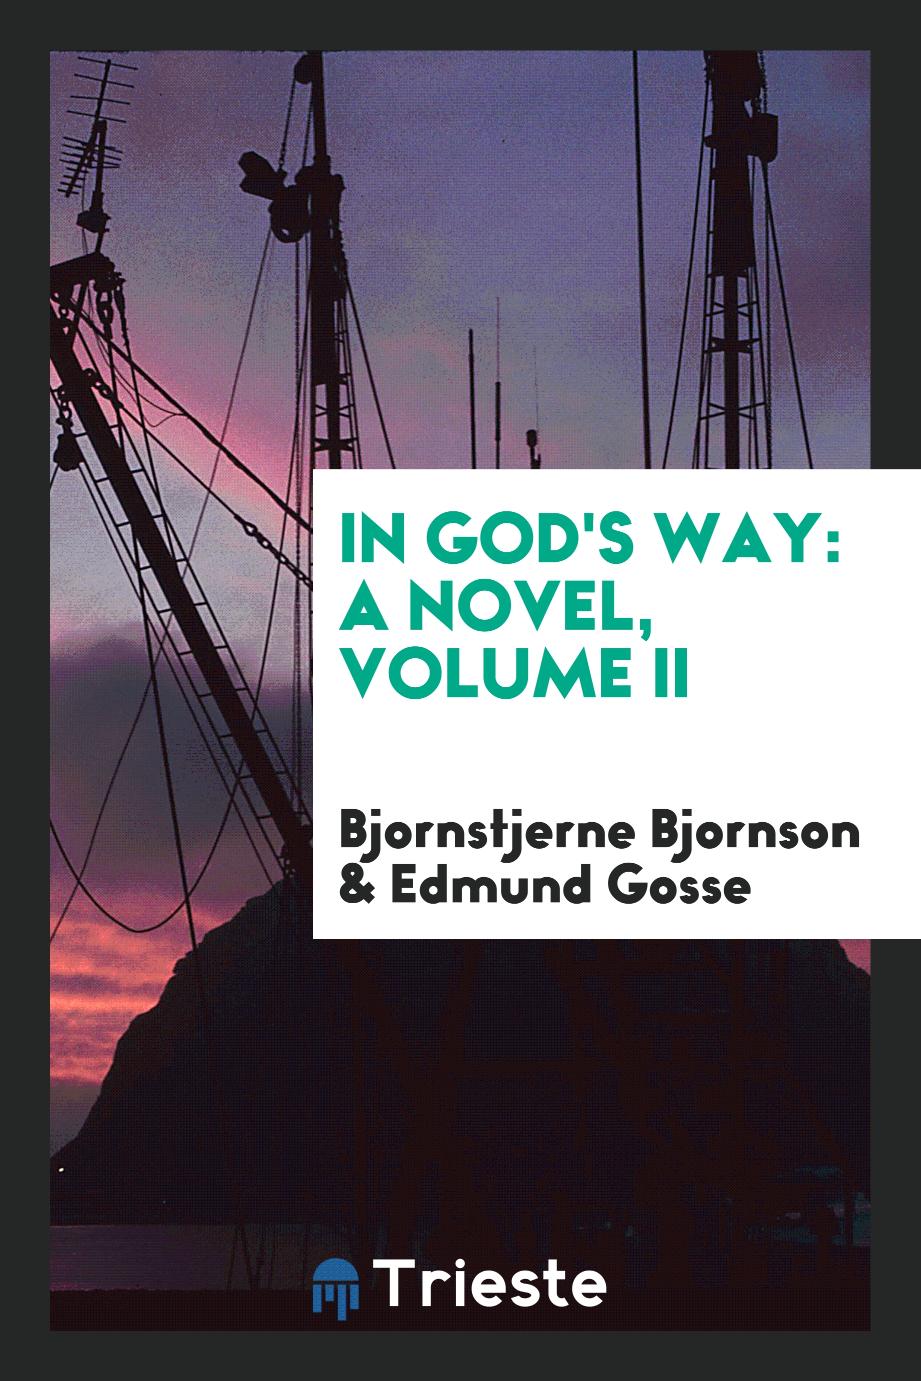 In God's way: a novel, Volume II